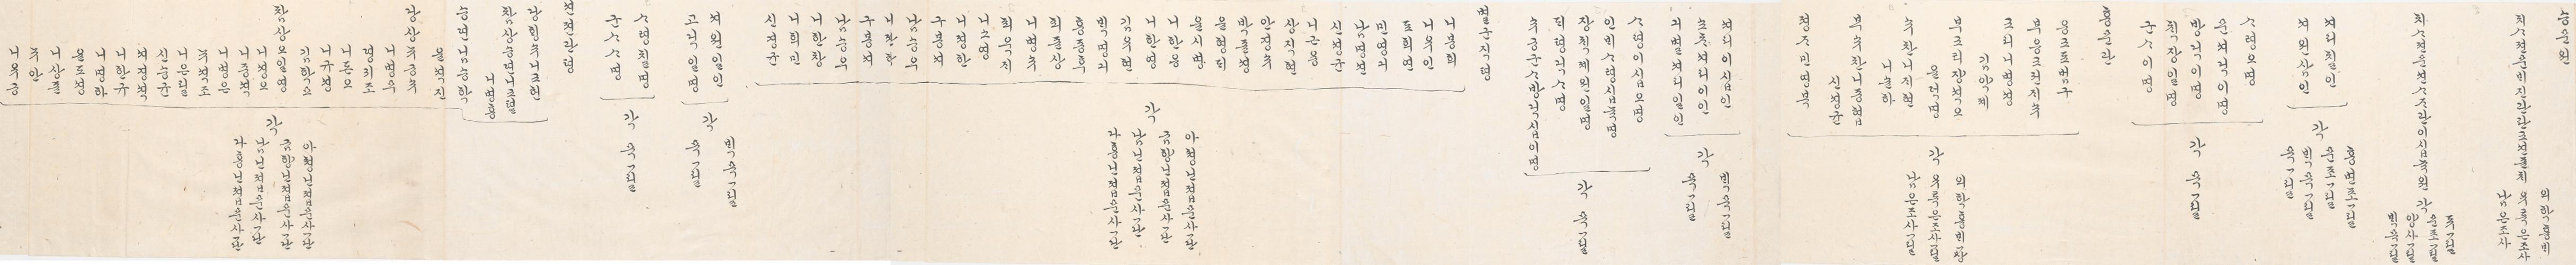 2_1894년 2월 왕세자 탄일 기념 상격 발기 6.jpg